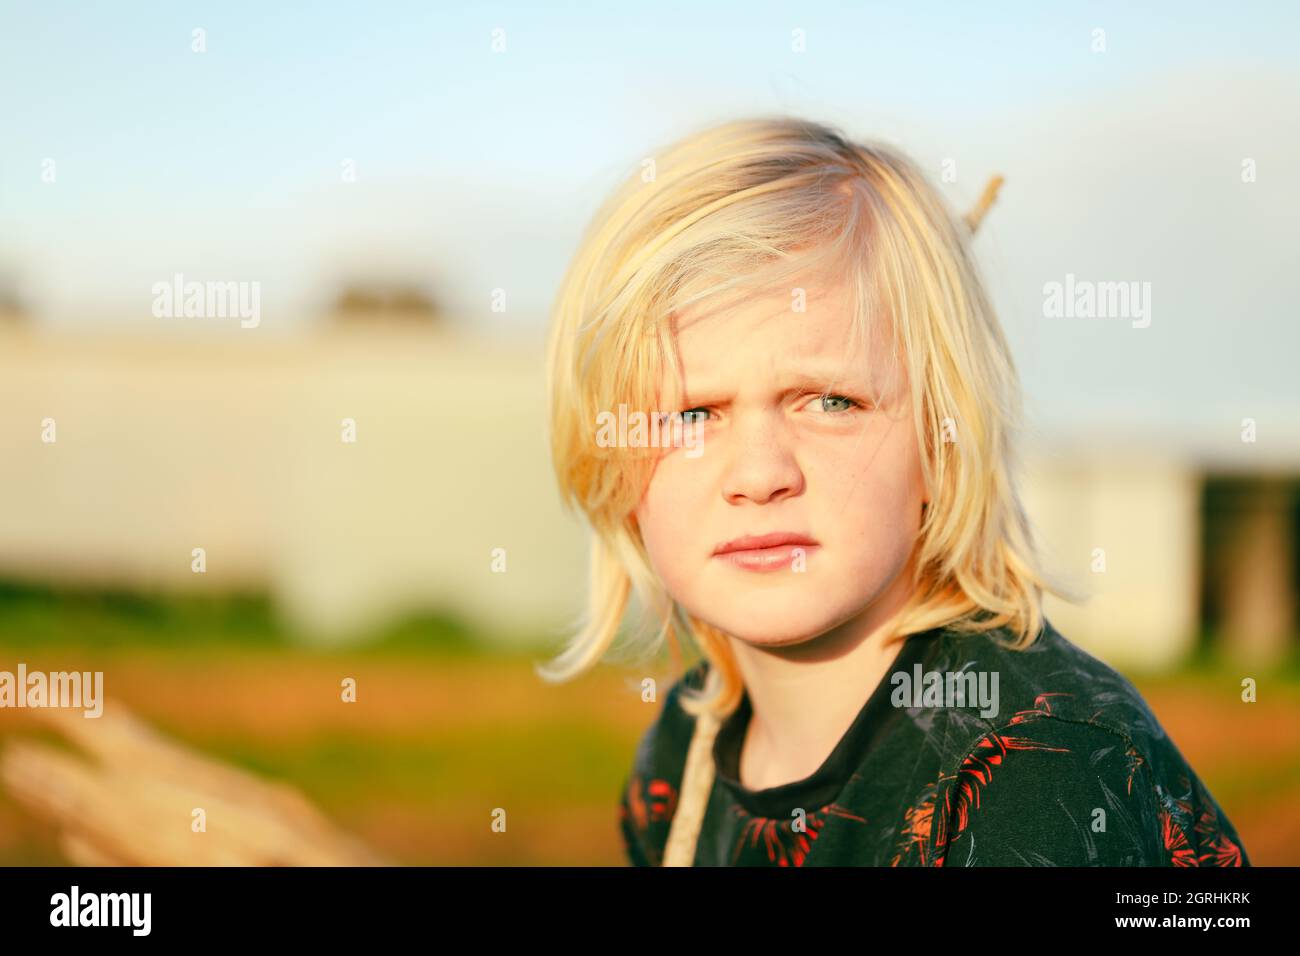 Portrait d'un garçon à la ferme avec de longs cheveux blonds Banque D'Images